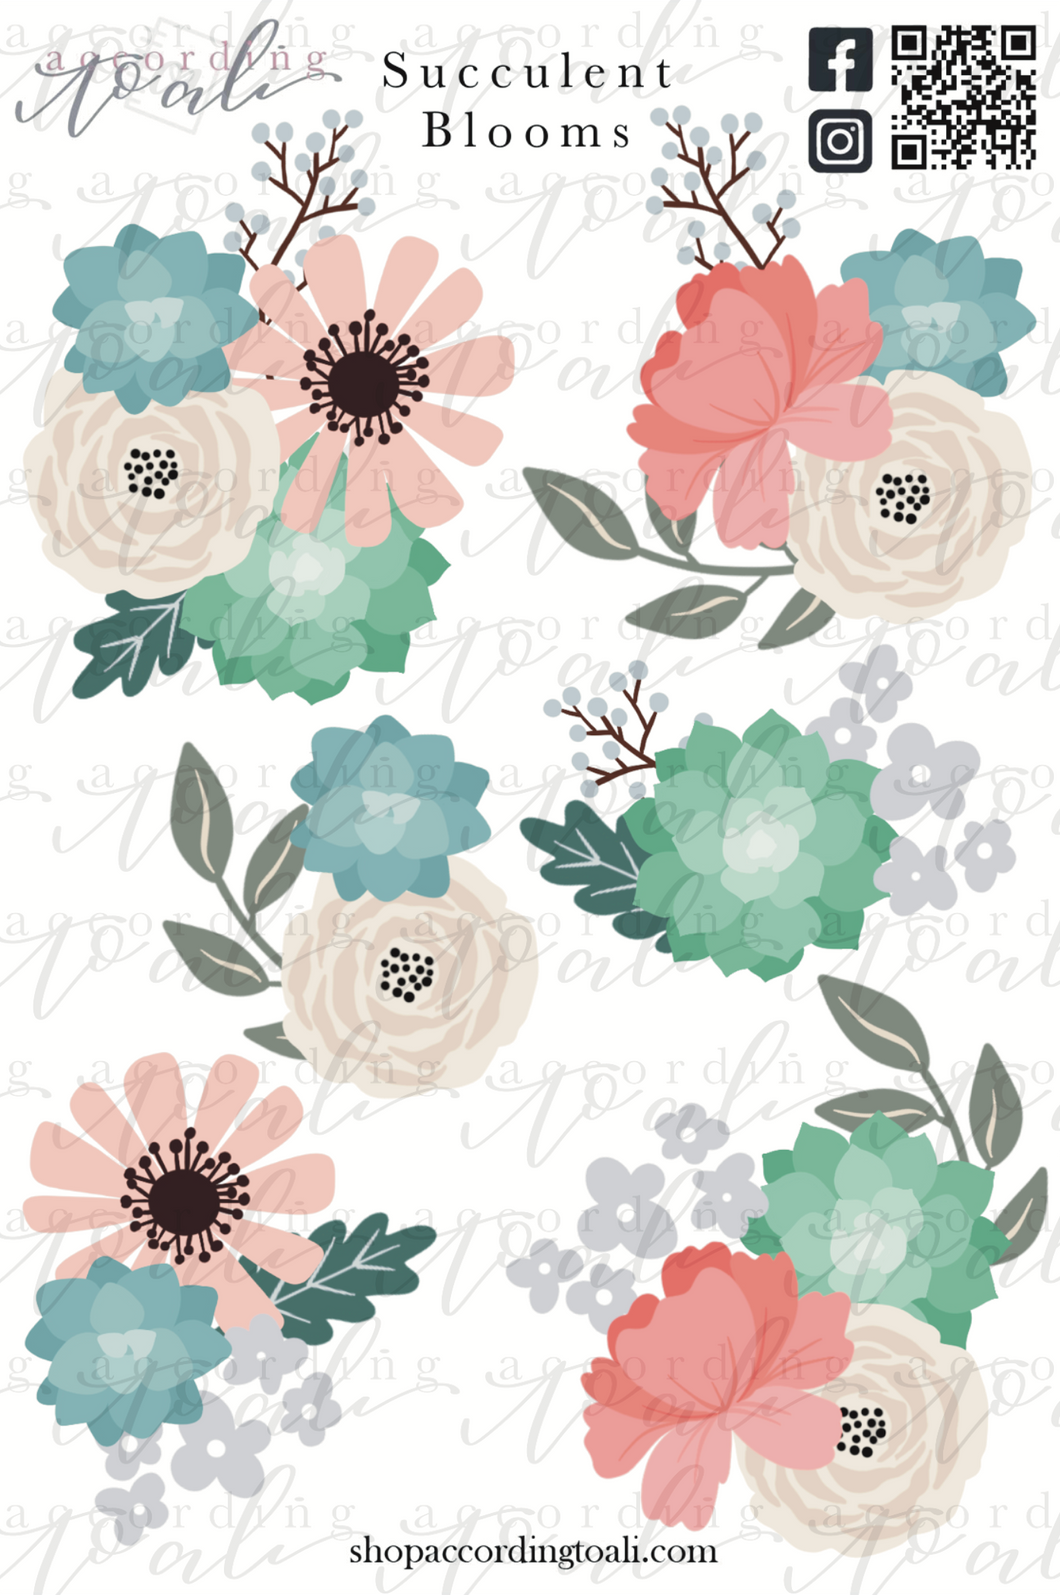 Succulent Blooms Sticker Sheet